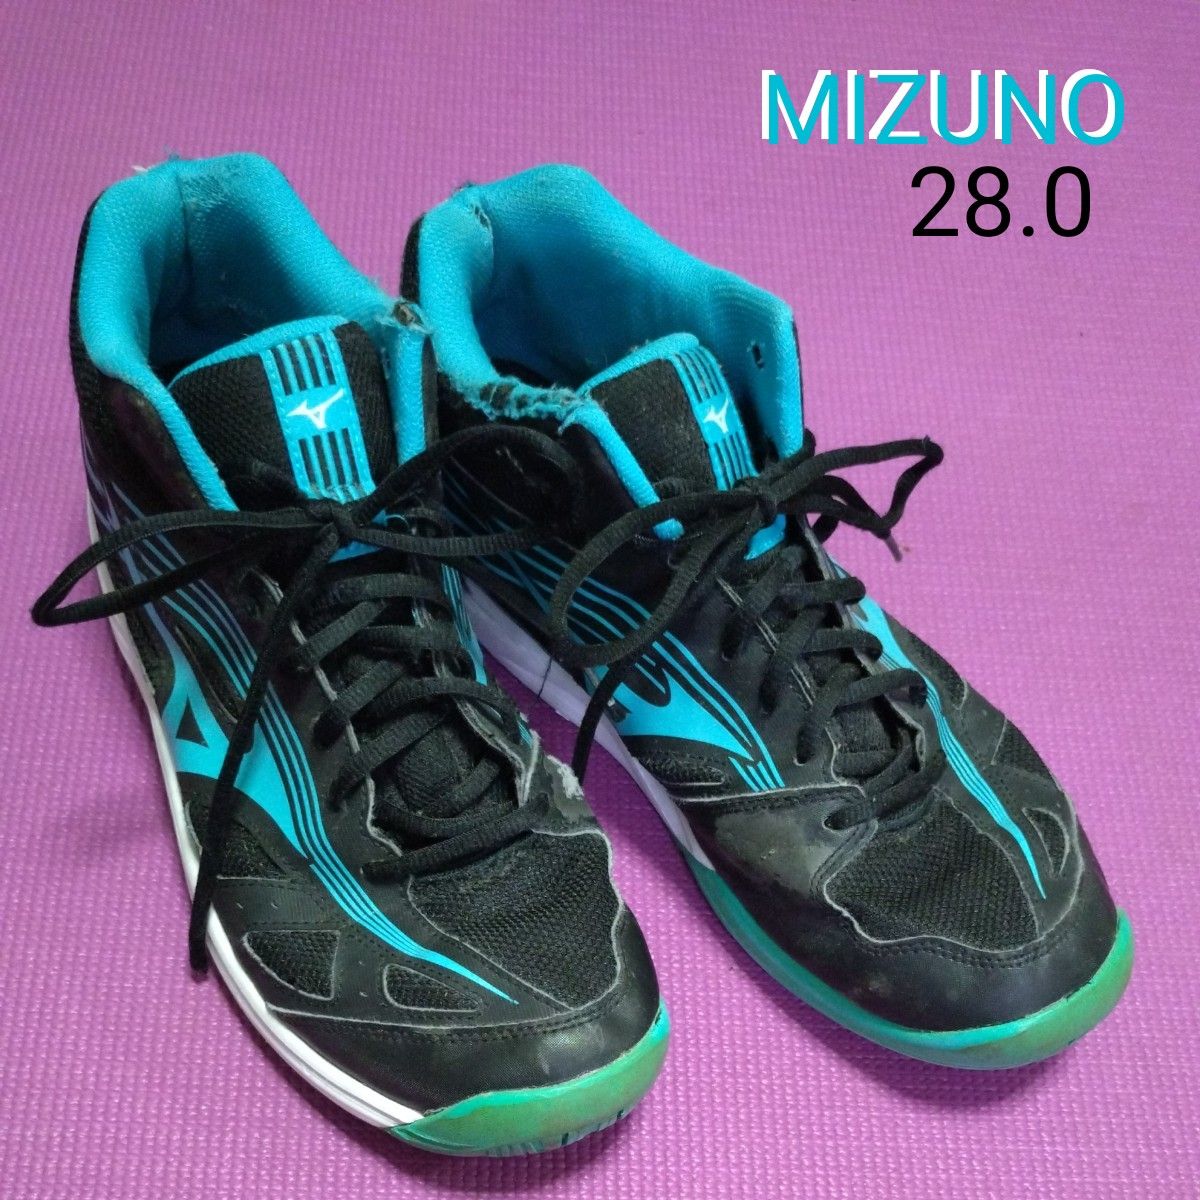 MIZUNO シューズ バレーボール サイクロンスピード バレーボールシューズ 28 28.0 練習 練習用